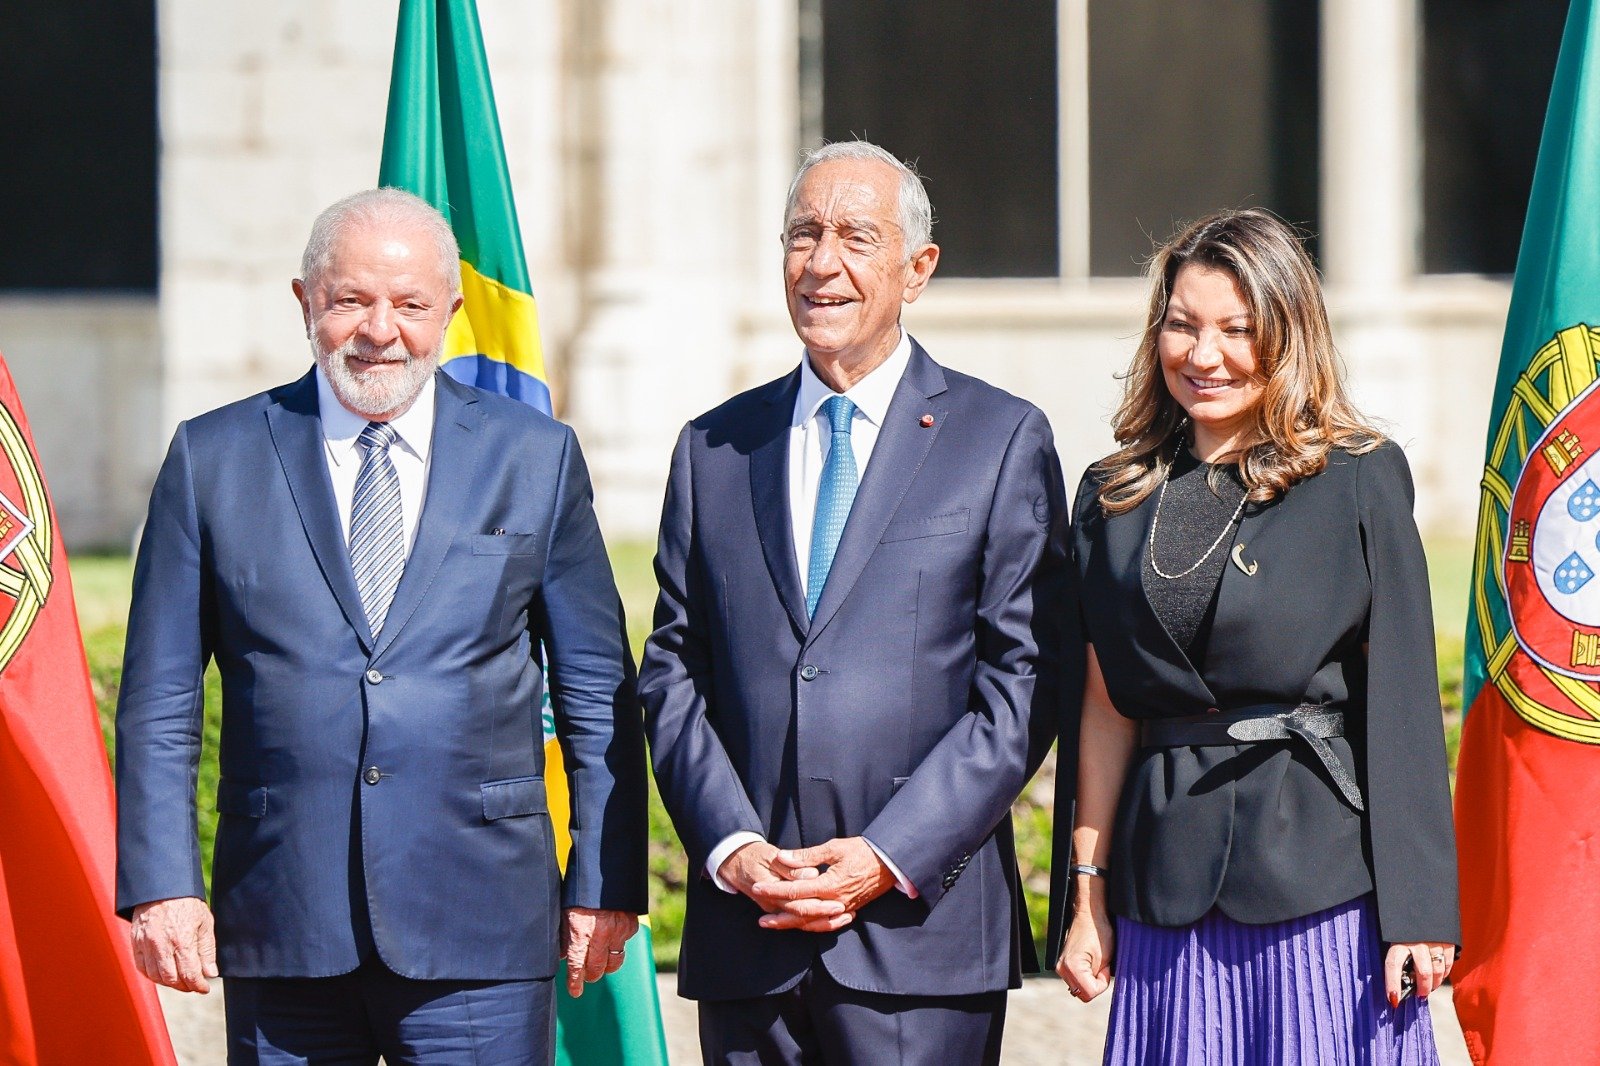 Presidente Lula inicia compromissos oficiais em Lisboa neste sábado, 22 - Foto: Reprodução/Twitter @LulaOficial @Ricardo Stuckert